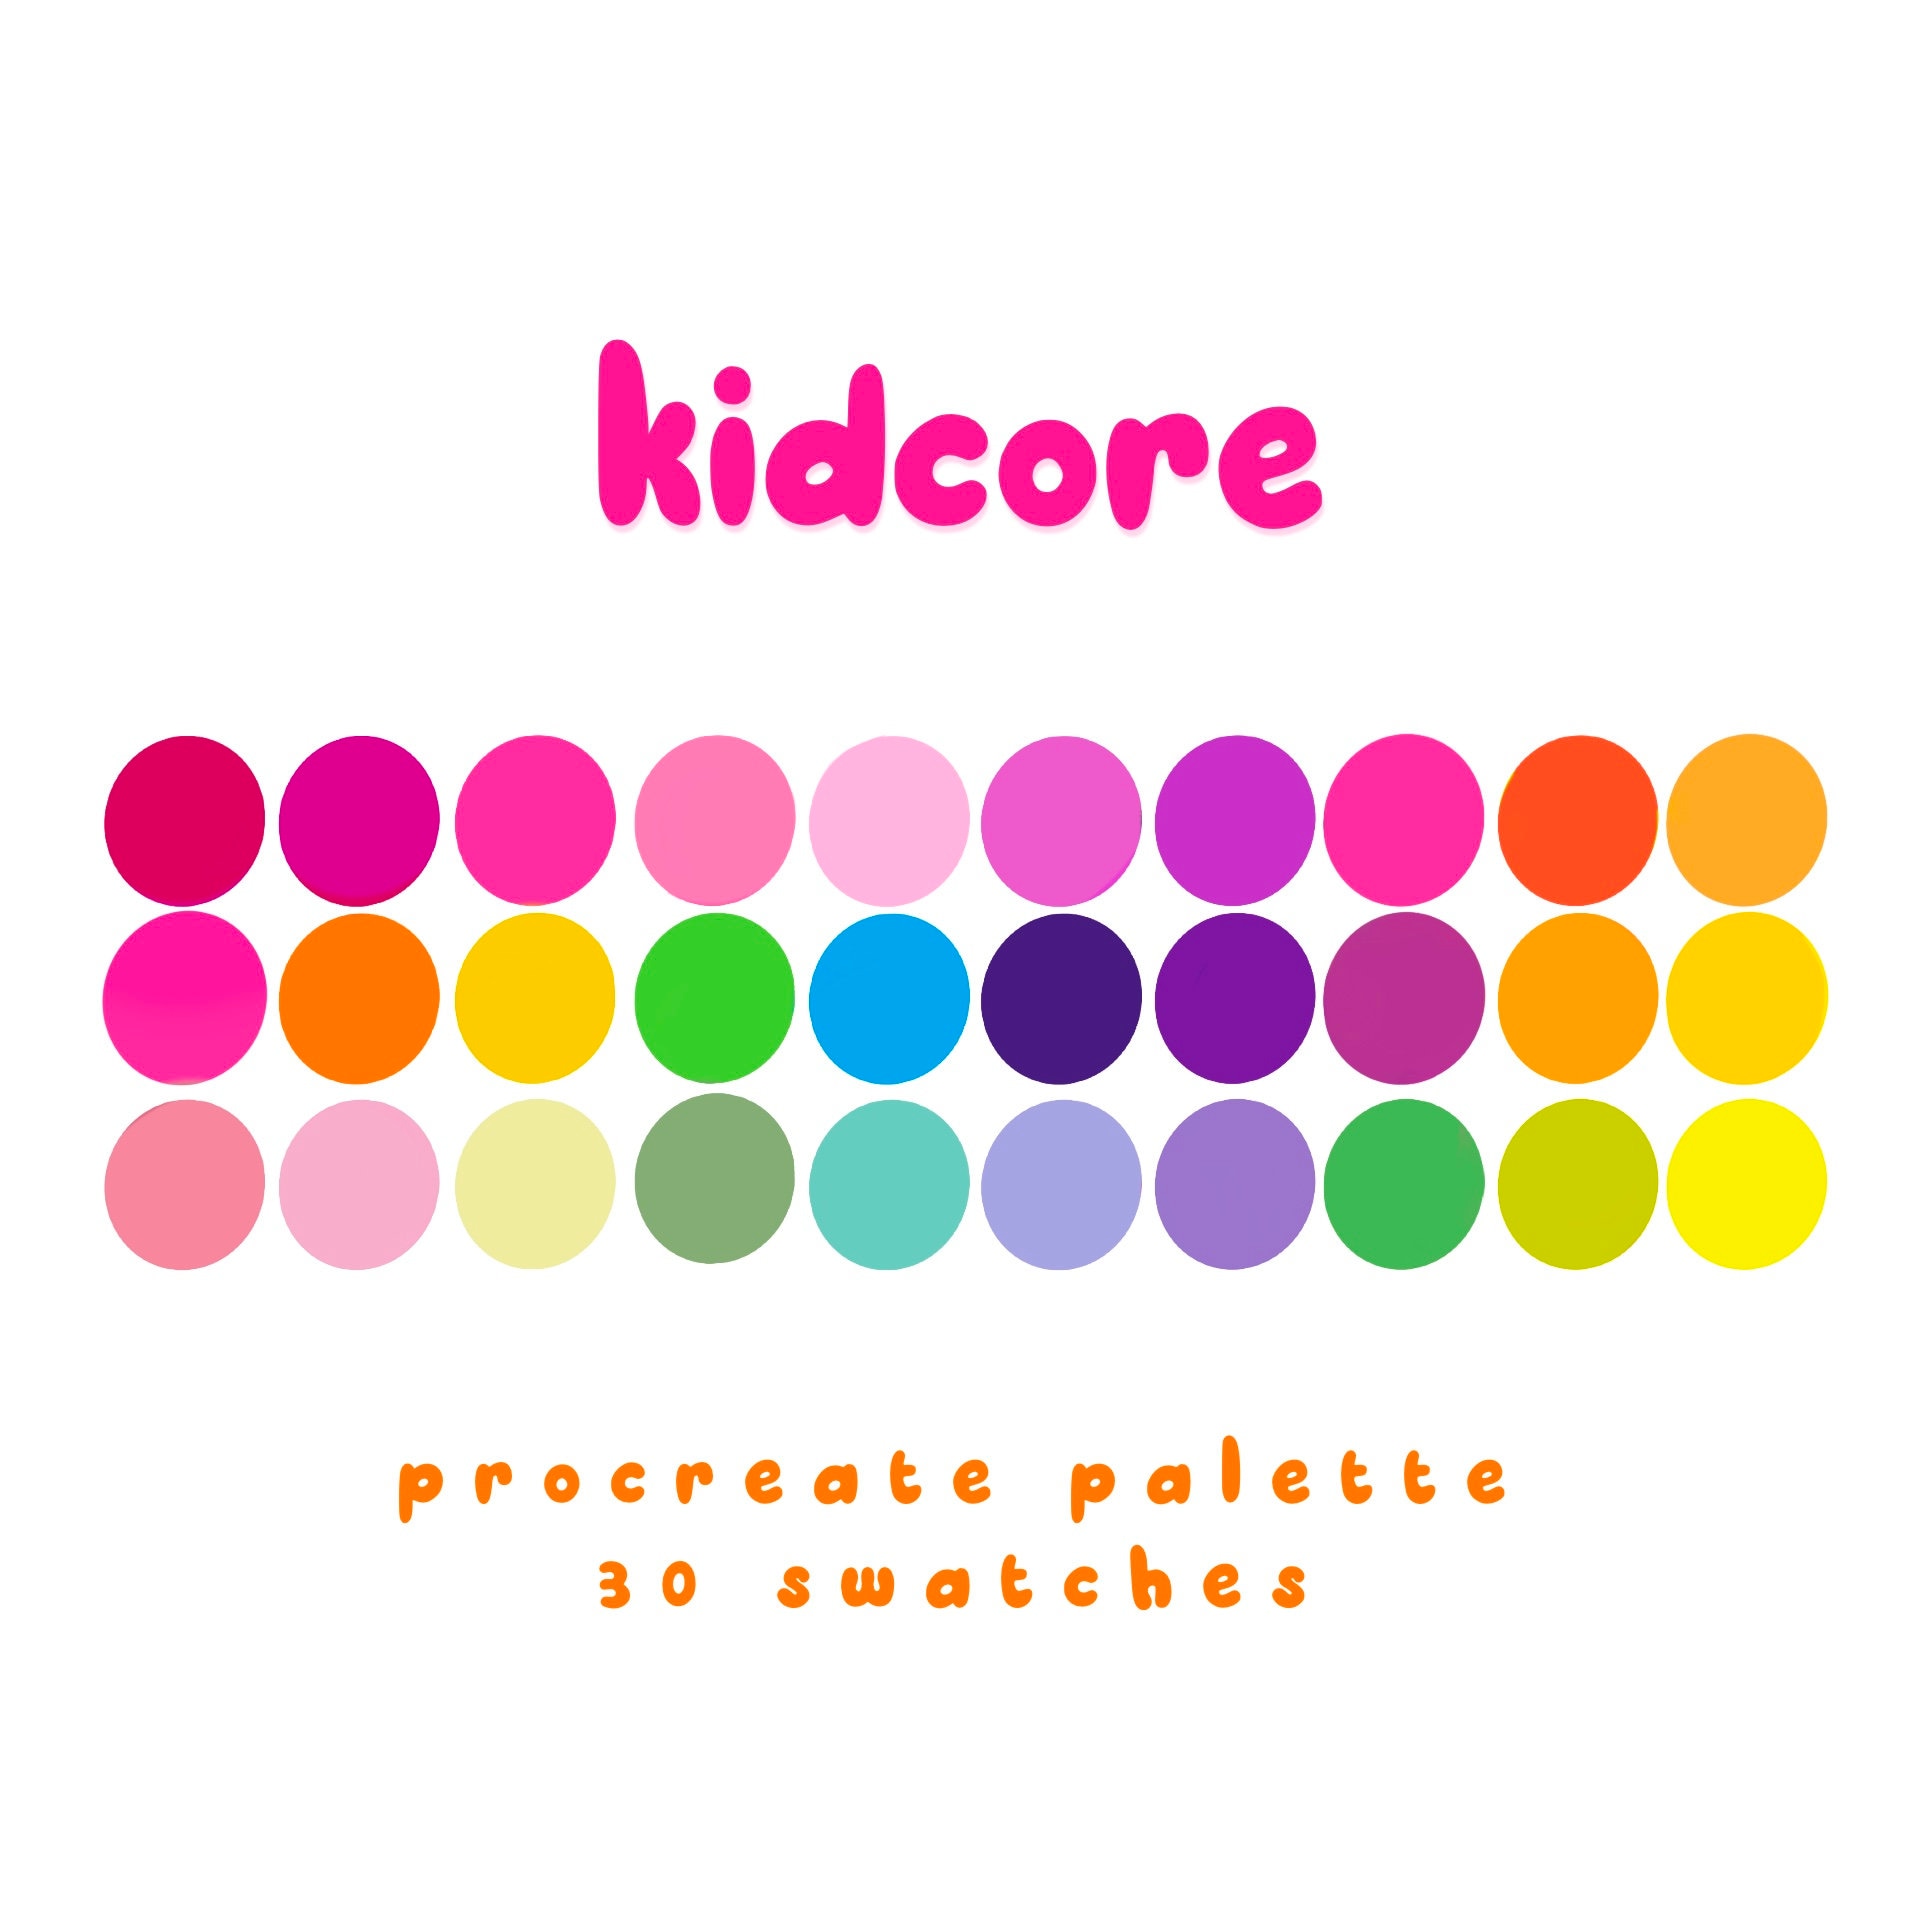 kidcore pastel color palette, procreate color palette, color swatches, iPad  procreate tools and resources